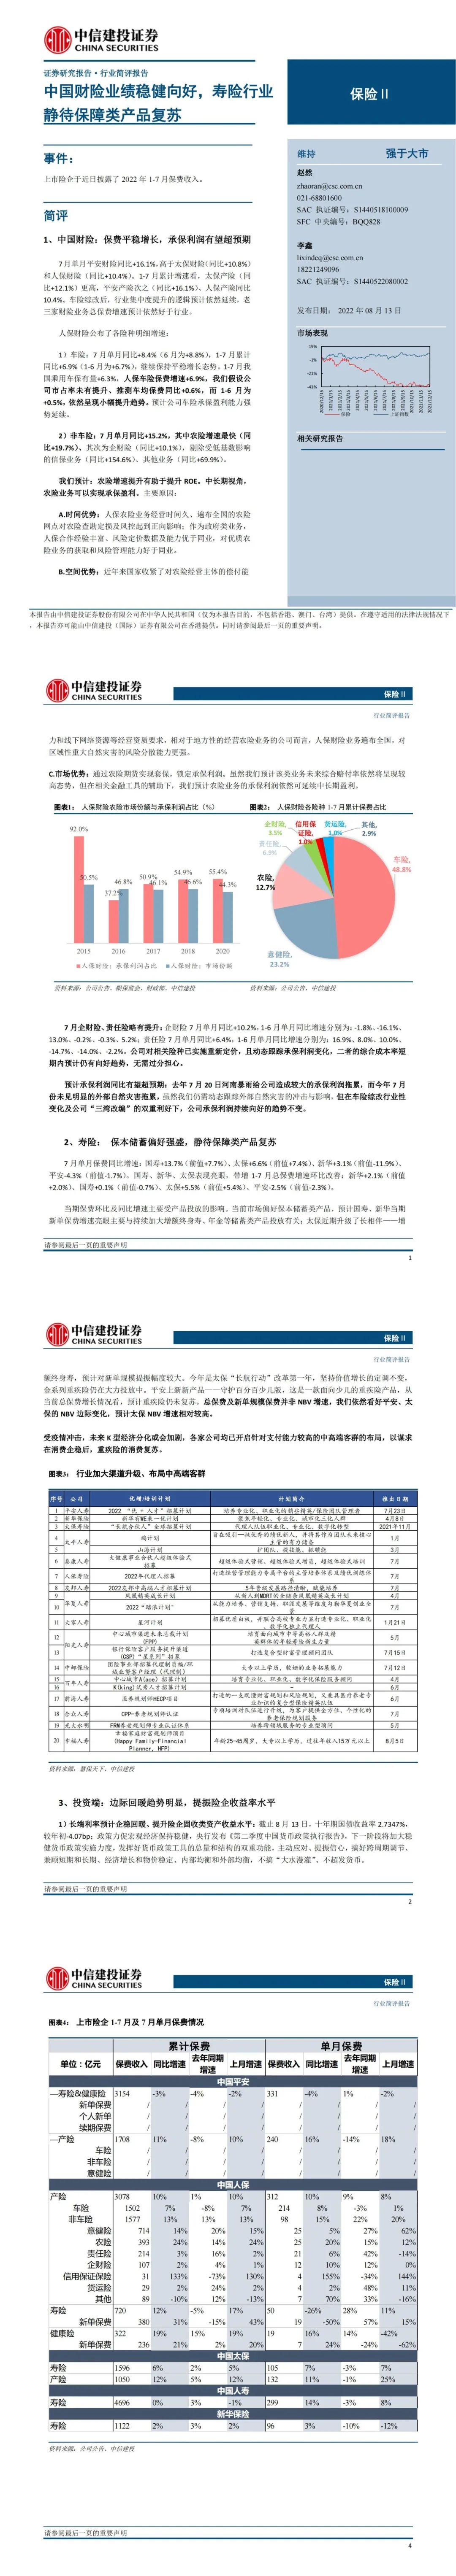 动态丨中国财险业绩稳健向好，寿险行业静待保障类产品复苏